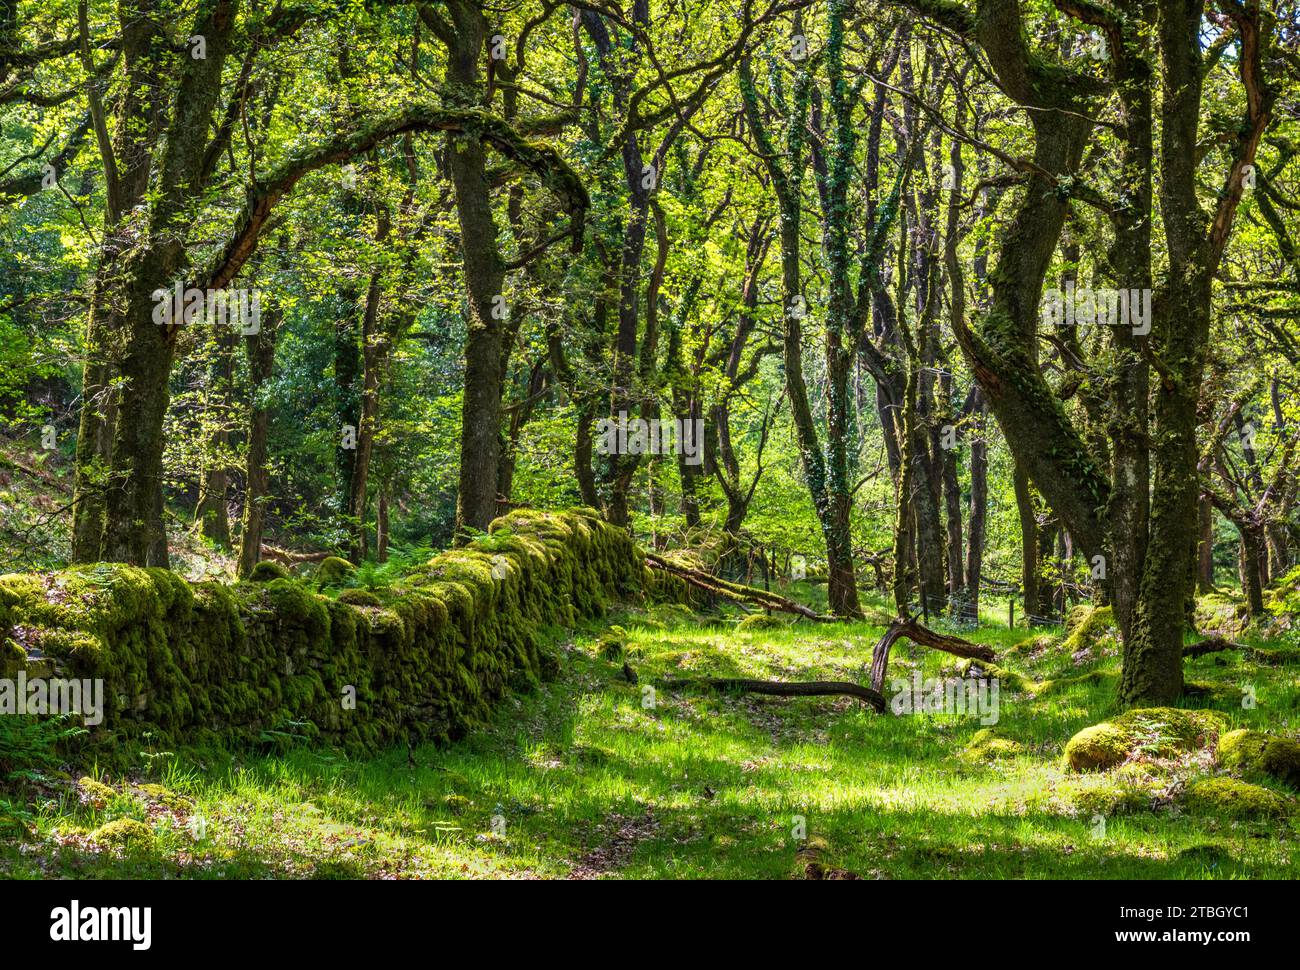 Im geschützten Dartmoor-Tal des East Okement River in der Nähe von Fatherford, Okehampton, Devon, Großbritannien, waren Bäume und Moos von der Sonne bedeckt. Stockfoto